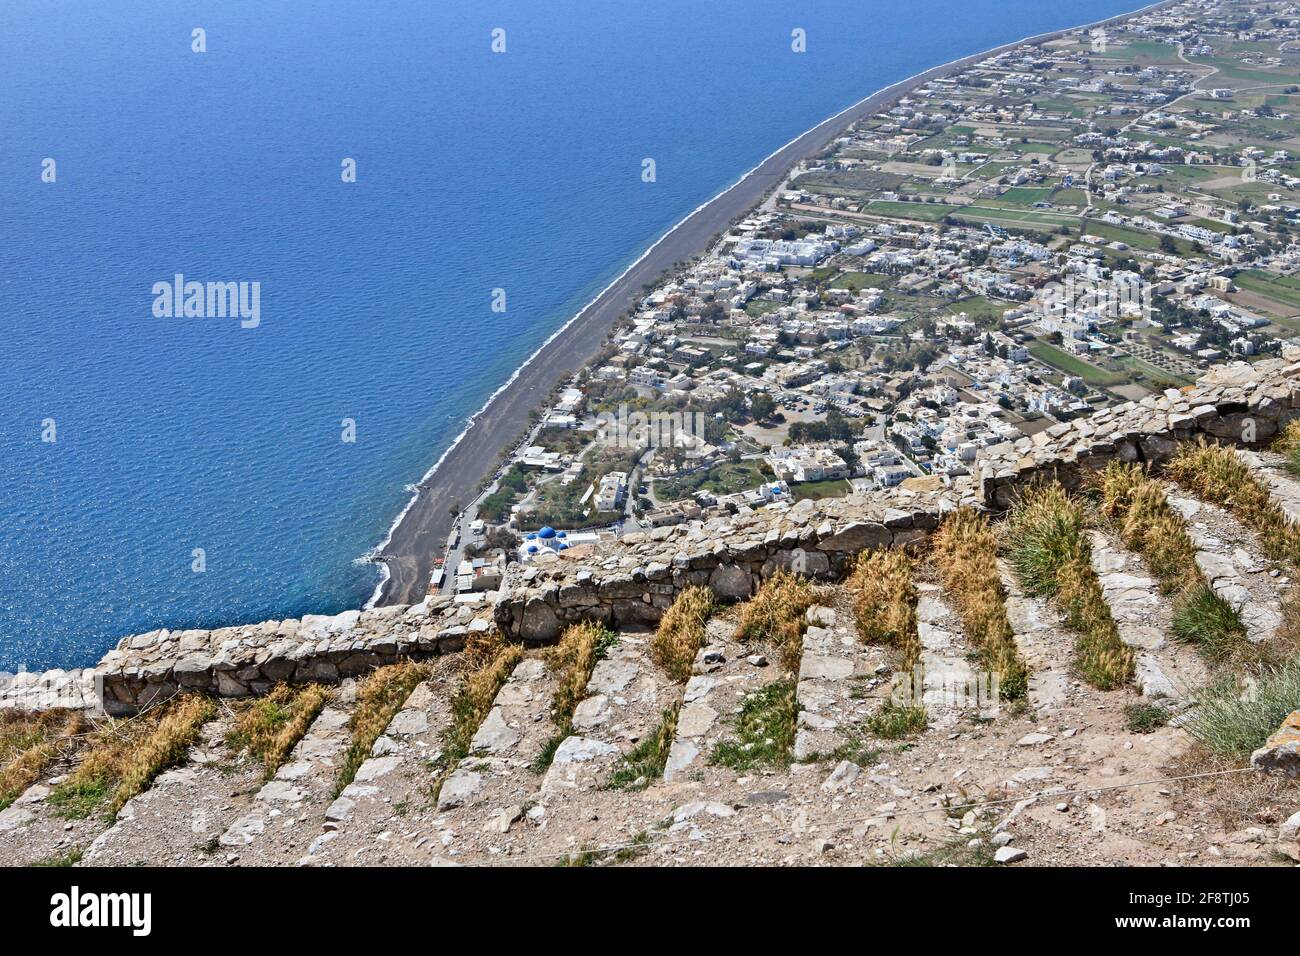 Vista panoramica della spiaggia di Perissa dalle rovine dell'antica Thera, sull'isola di Santorini, sulle isole Cicladi, sul Mar Egeo, sulla Grecia, Europa. Foto Stock